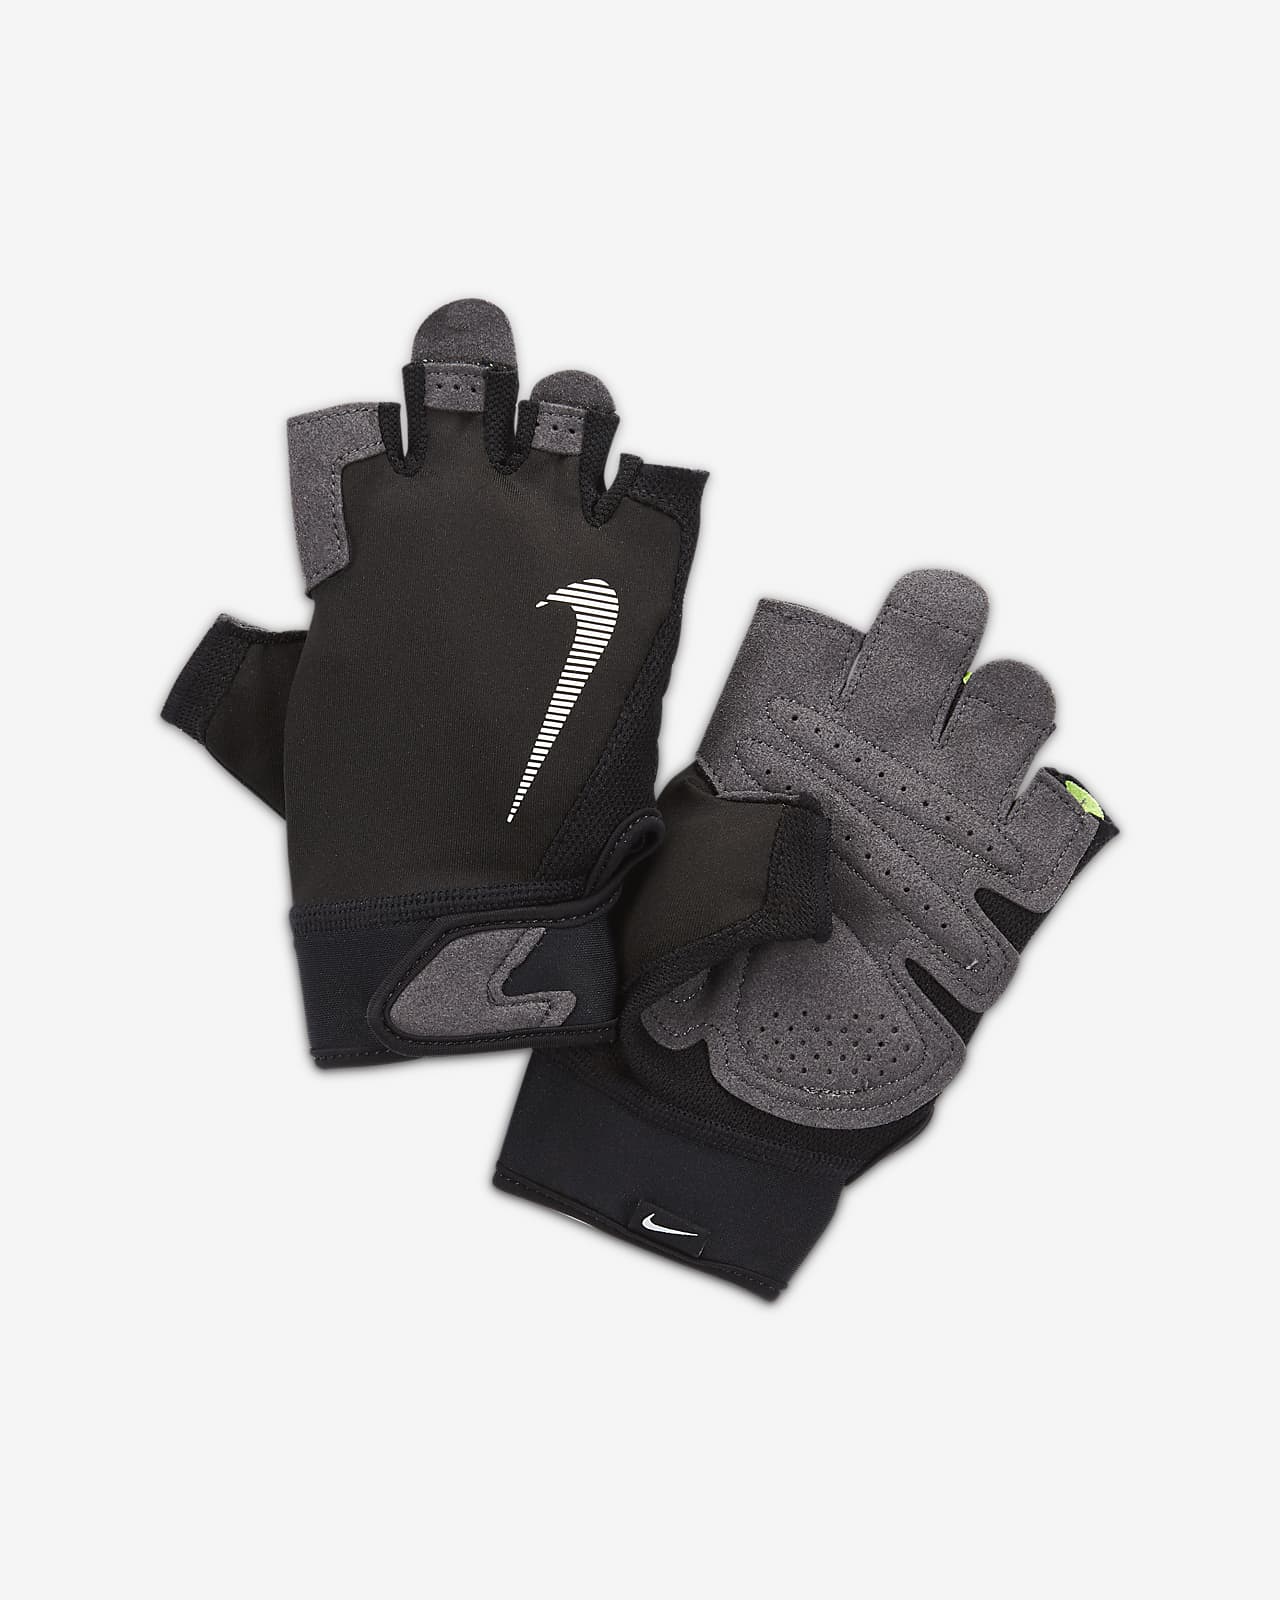 Träningshandskar Nike Ultimate för män